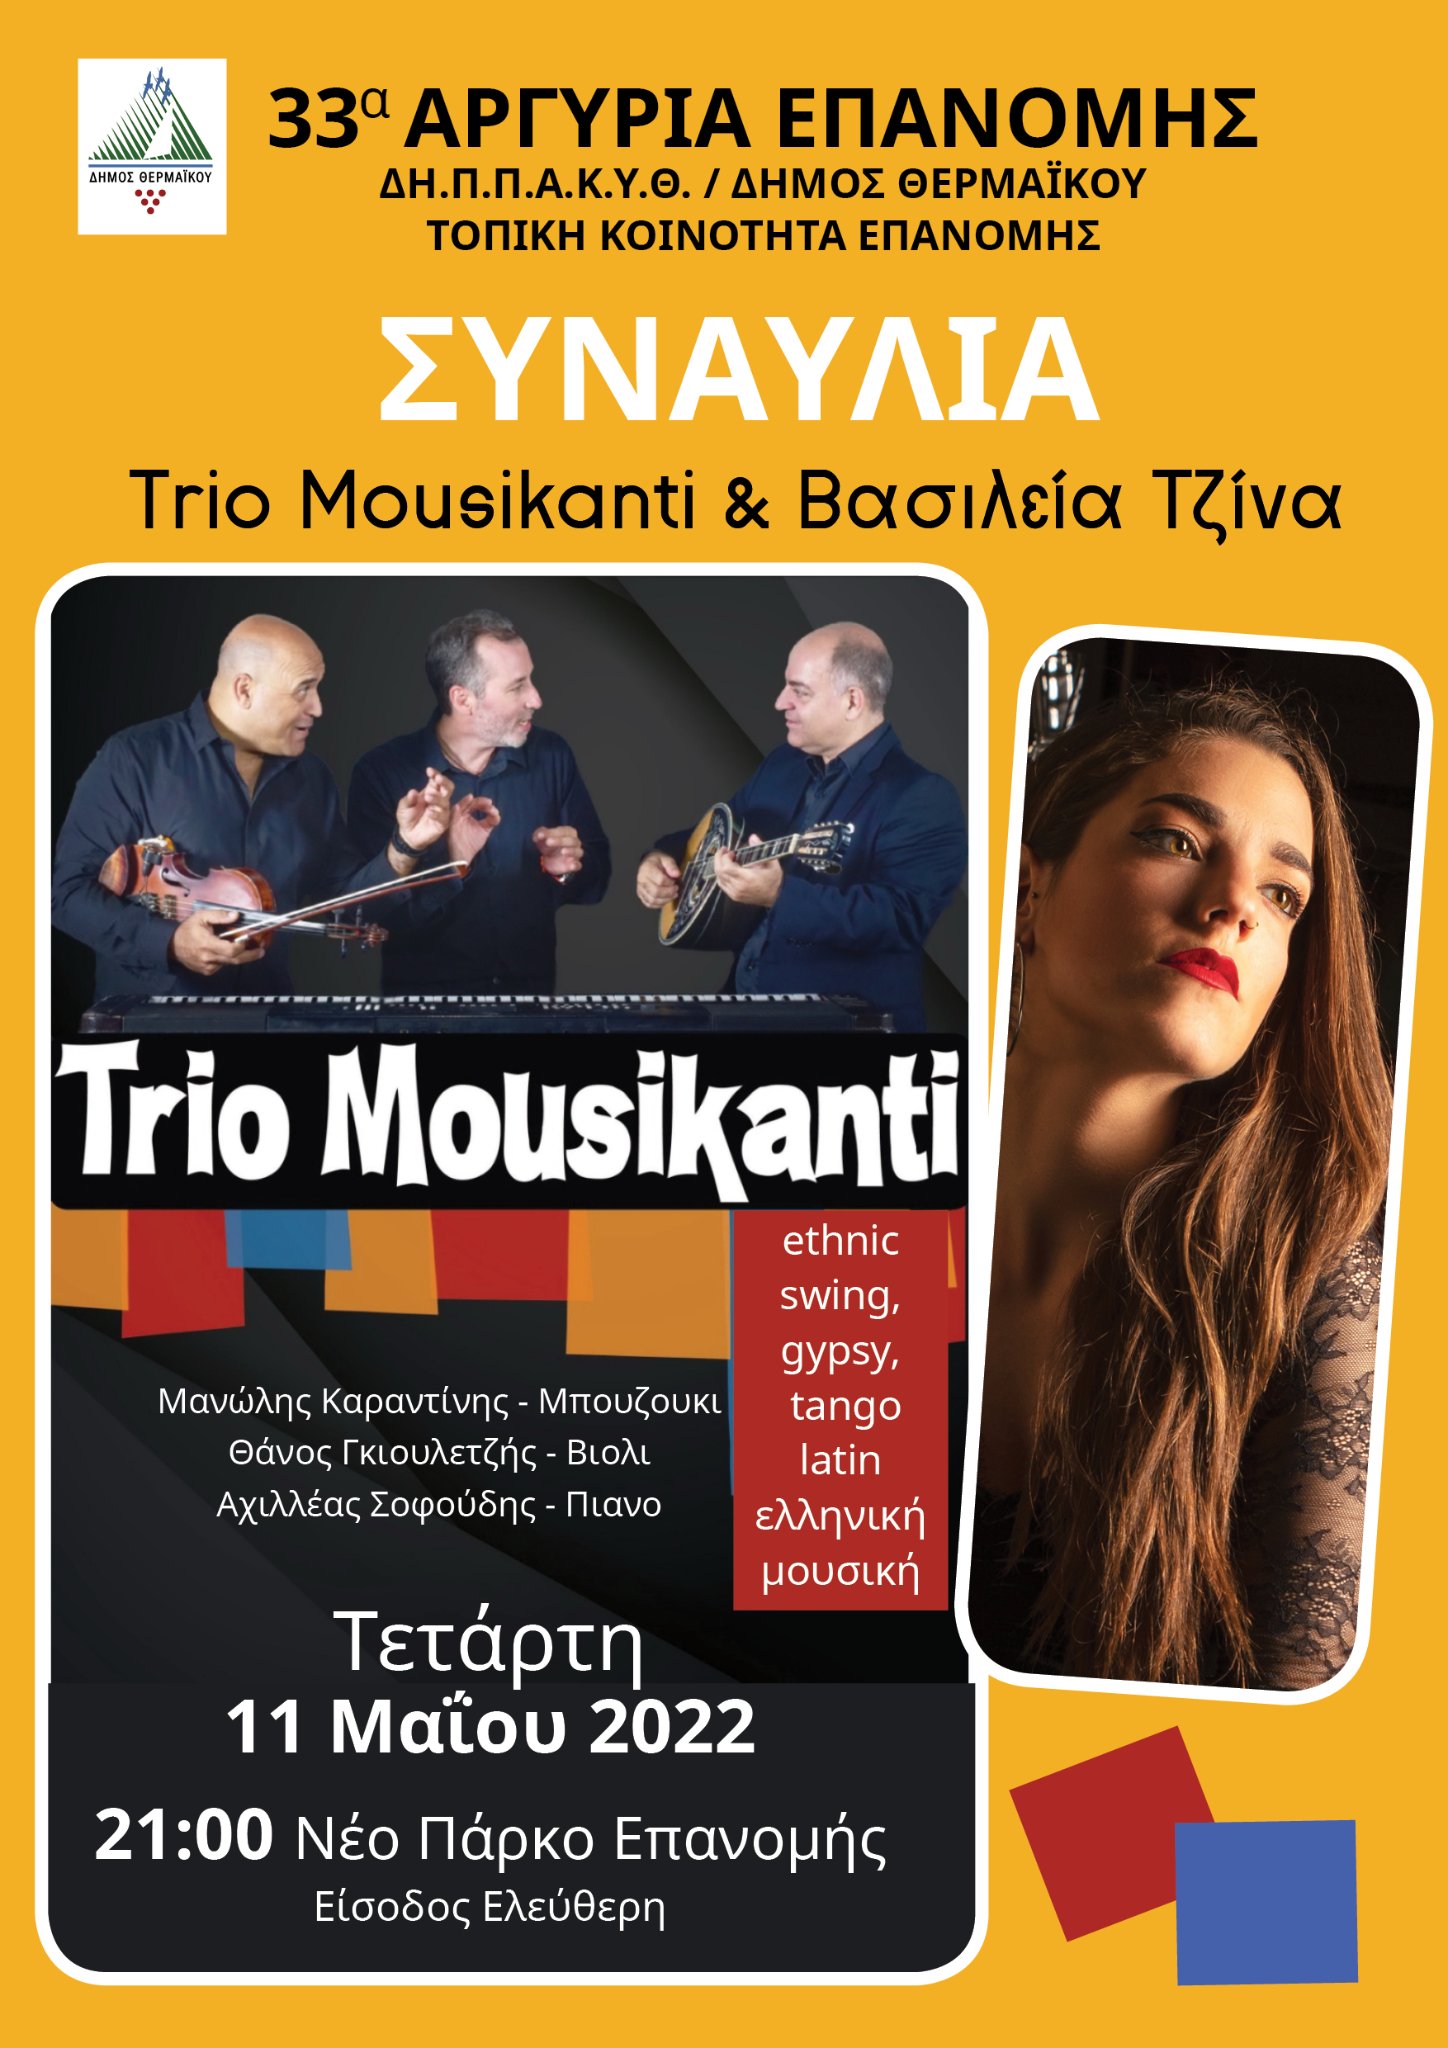 Συναυλία: Το “Trio Mousikanti” απόψε στα “Αργύρια” (21:00)